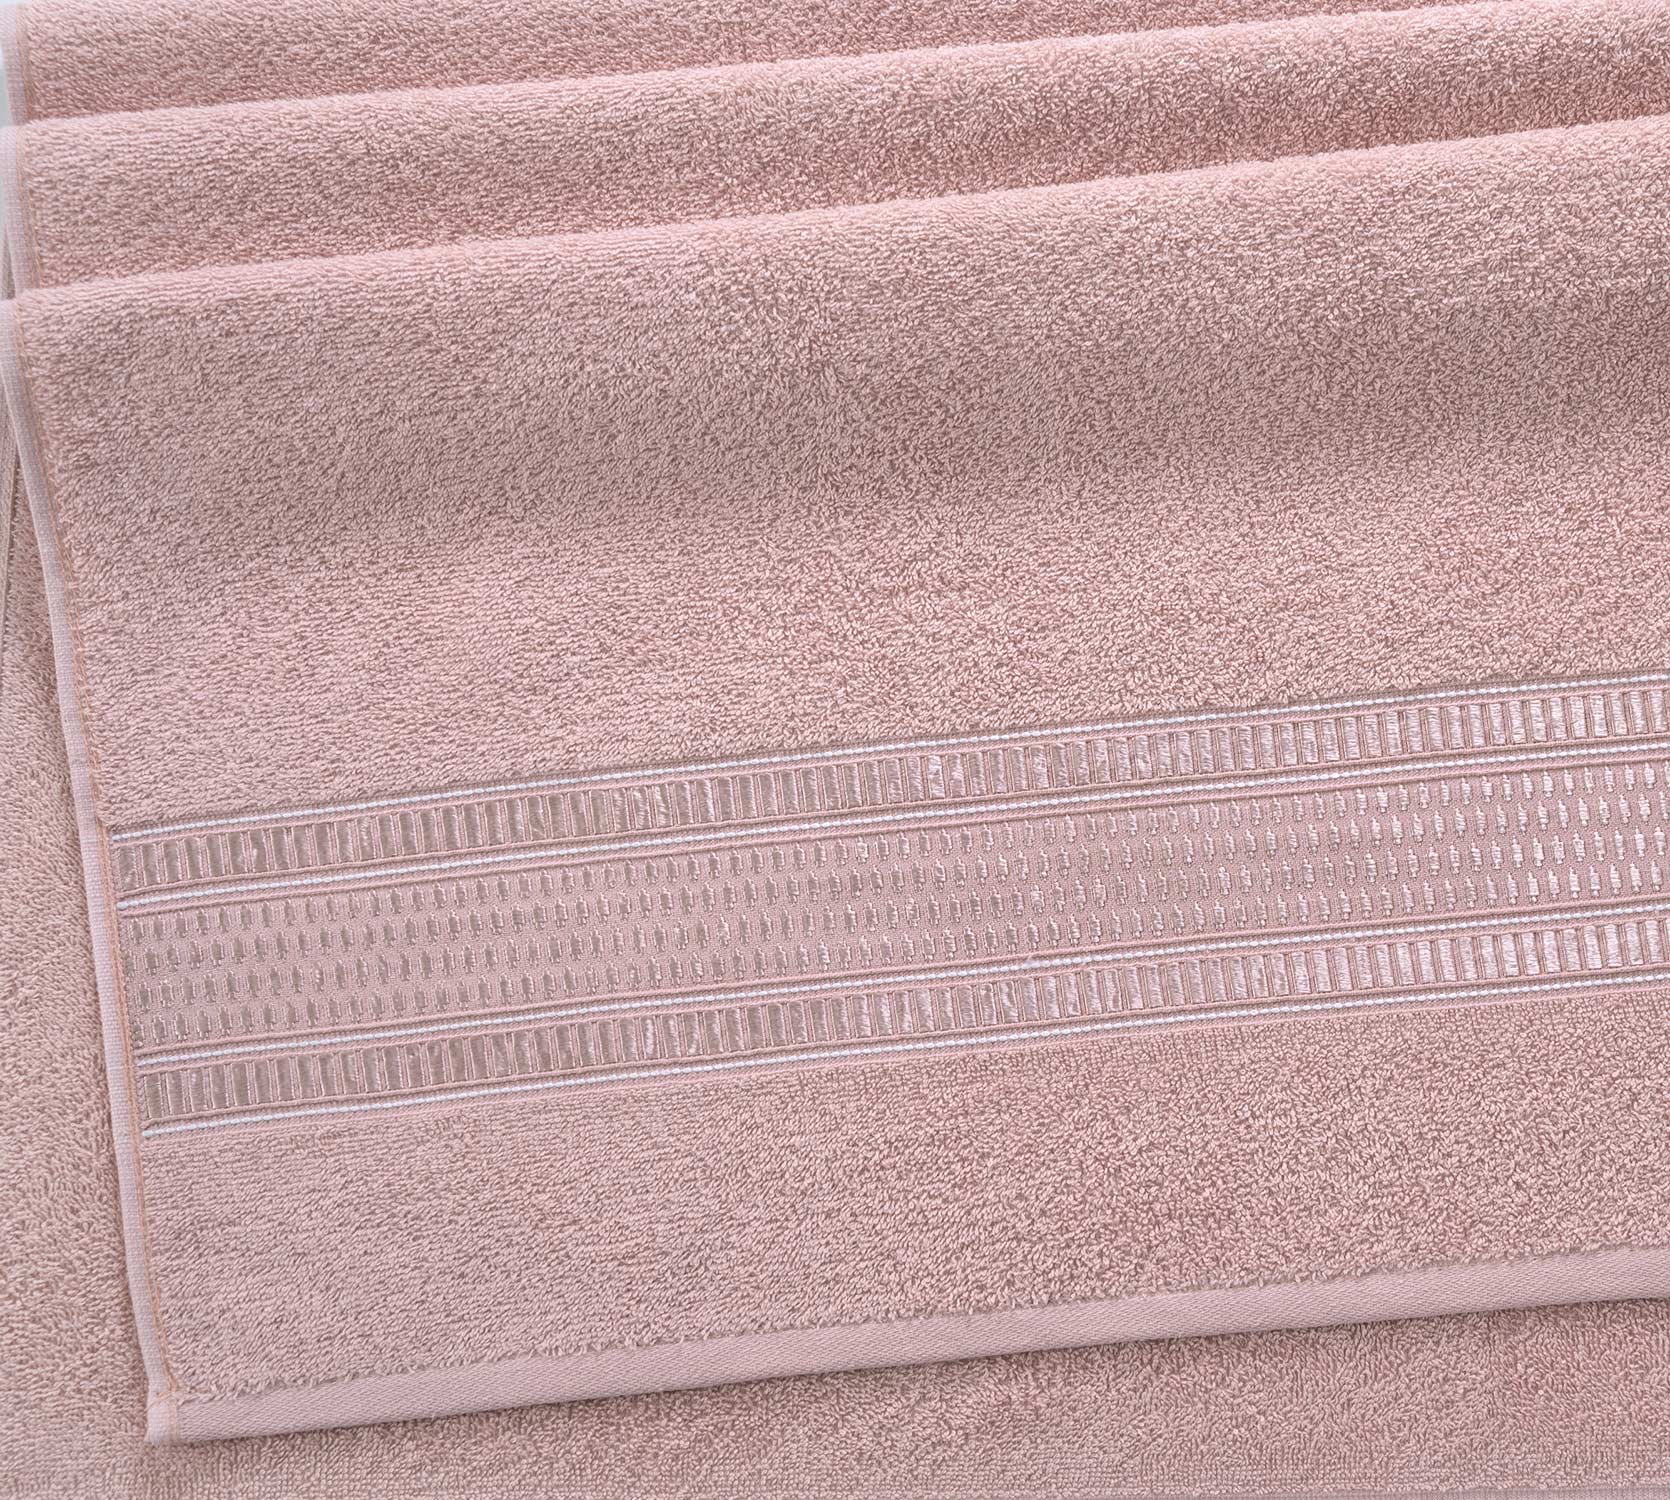 Постельное белье Полотенце махровое для рук и лица 50x90, Фортуна нежно-розовый фото